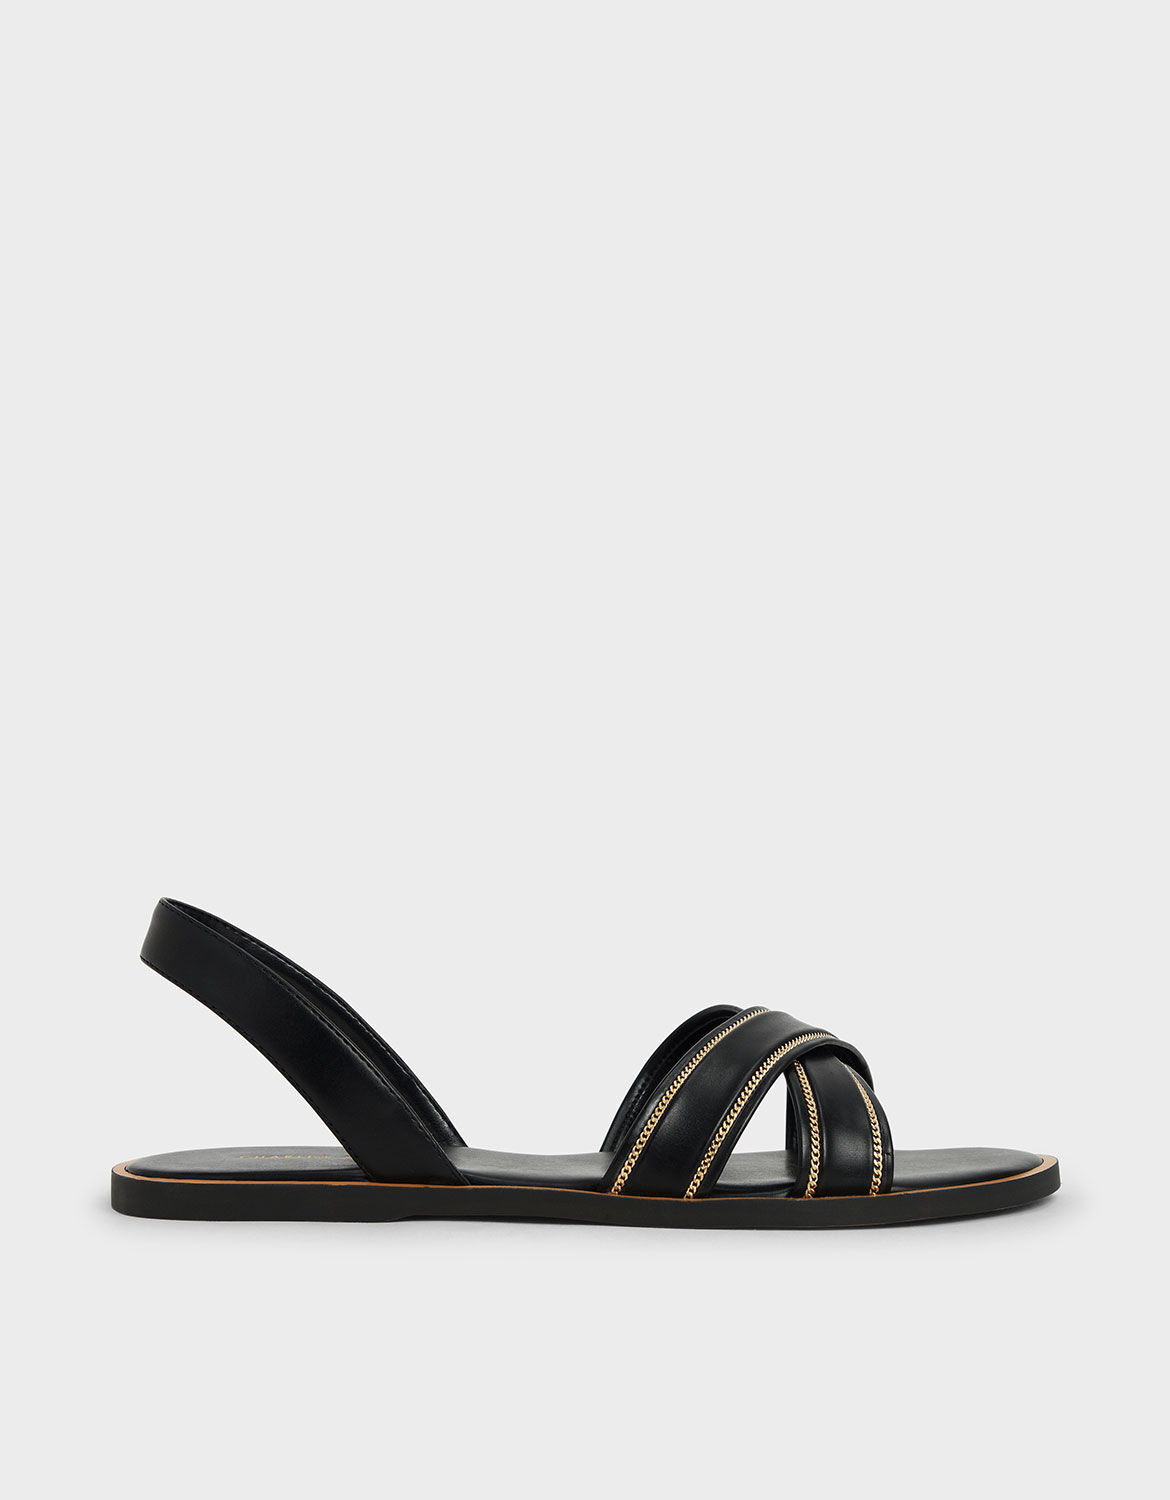 black embellished flip flops